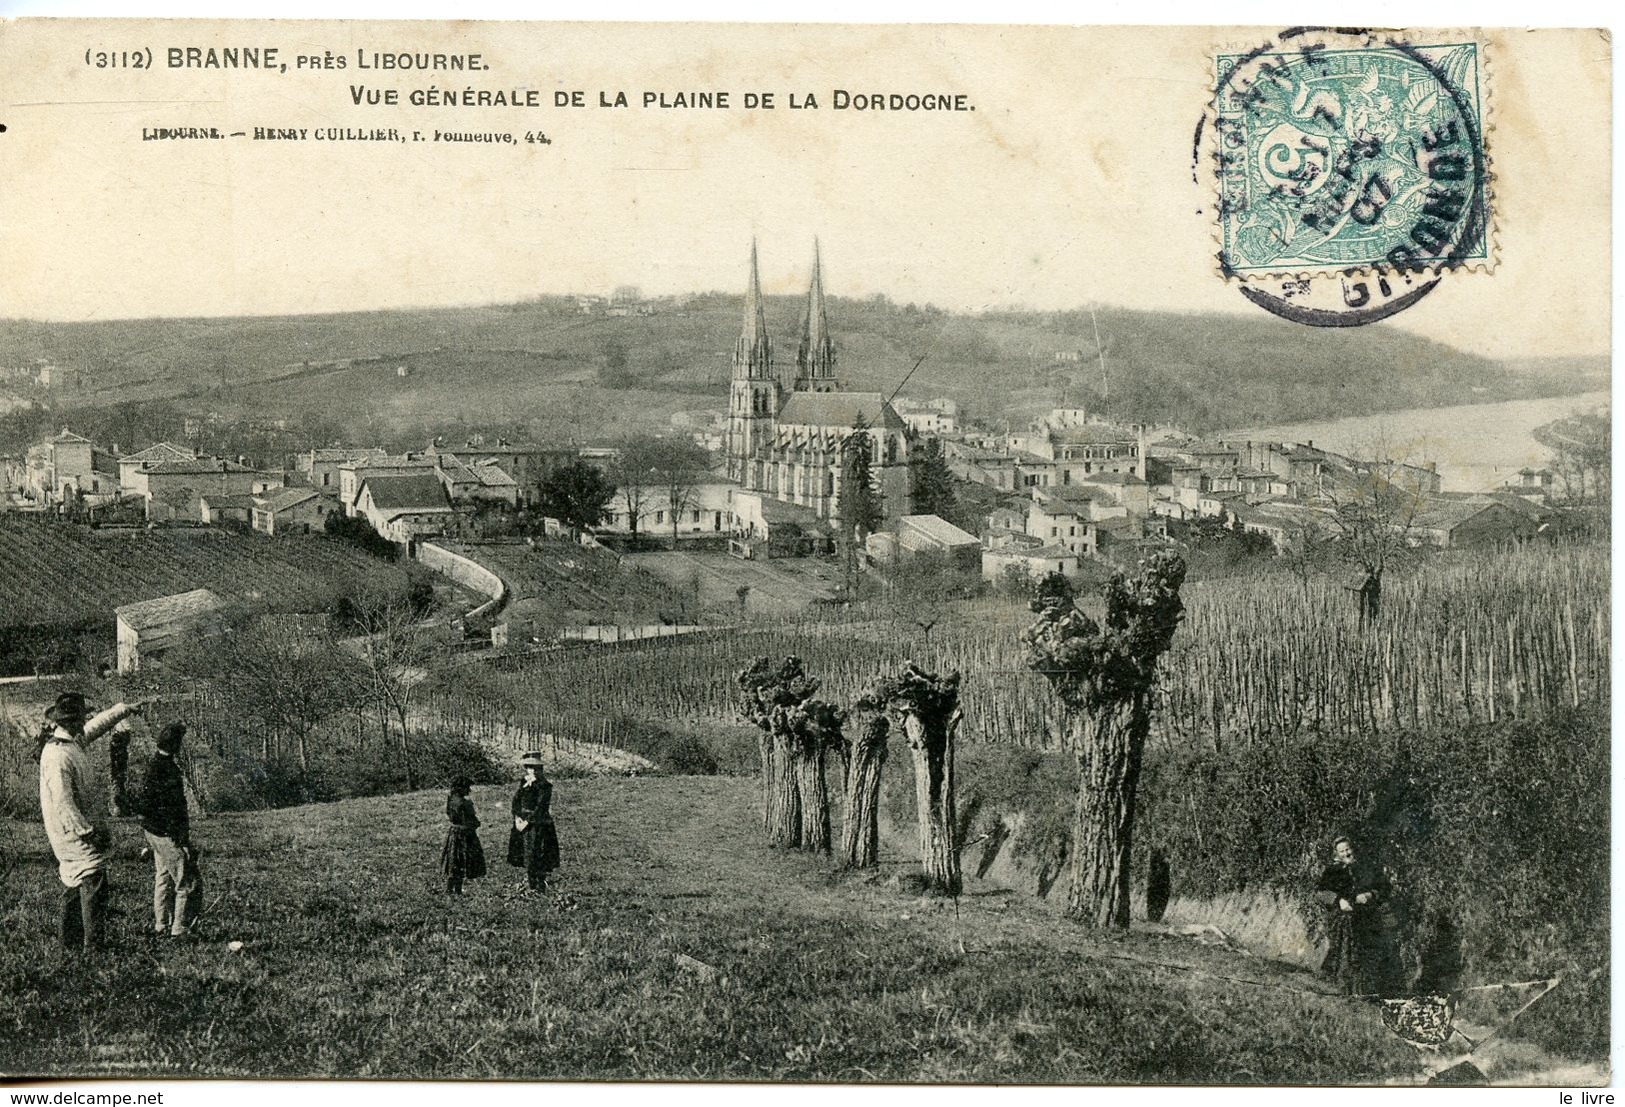 CPA 33 BRANNE PRES LIBOURNE. CARTE LEGEREMENT DEDOUBLEE. VUE GENERALE DE LA PLAINE DE LA DORDOGNE 1907